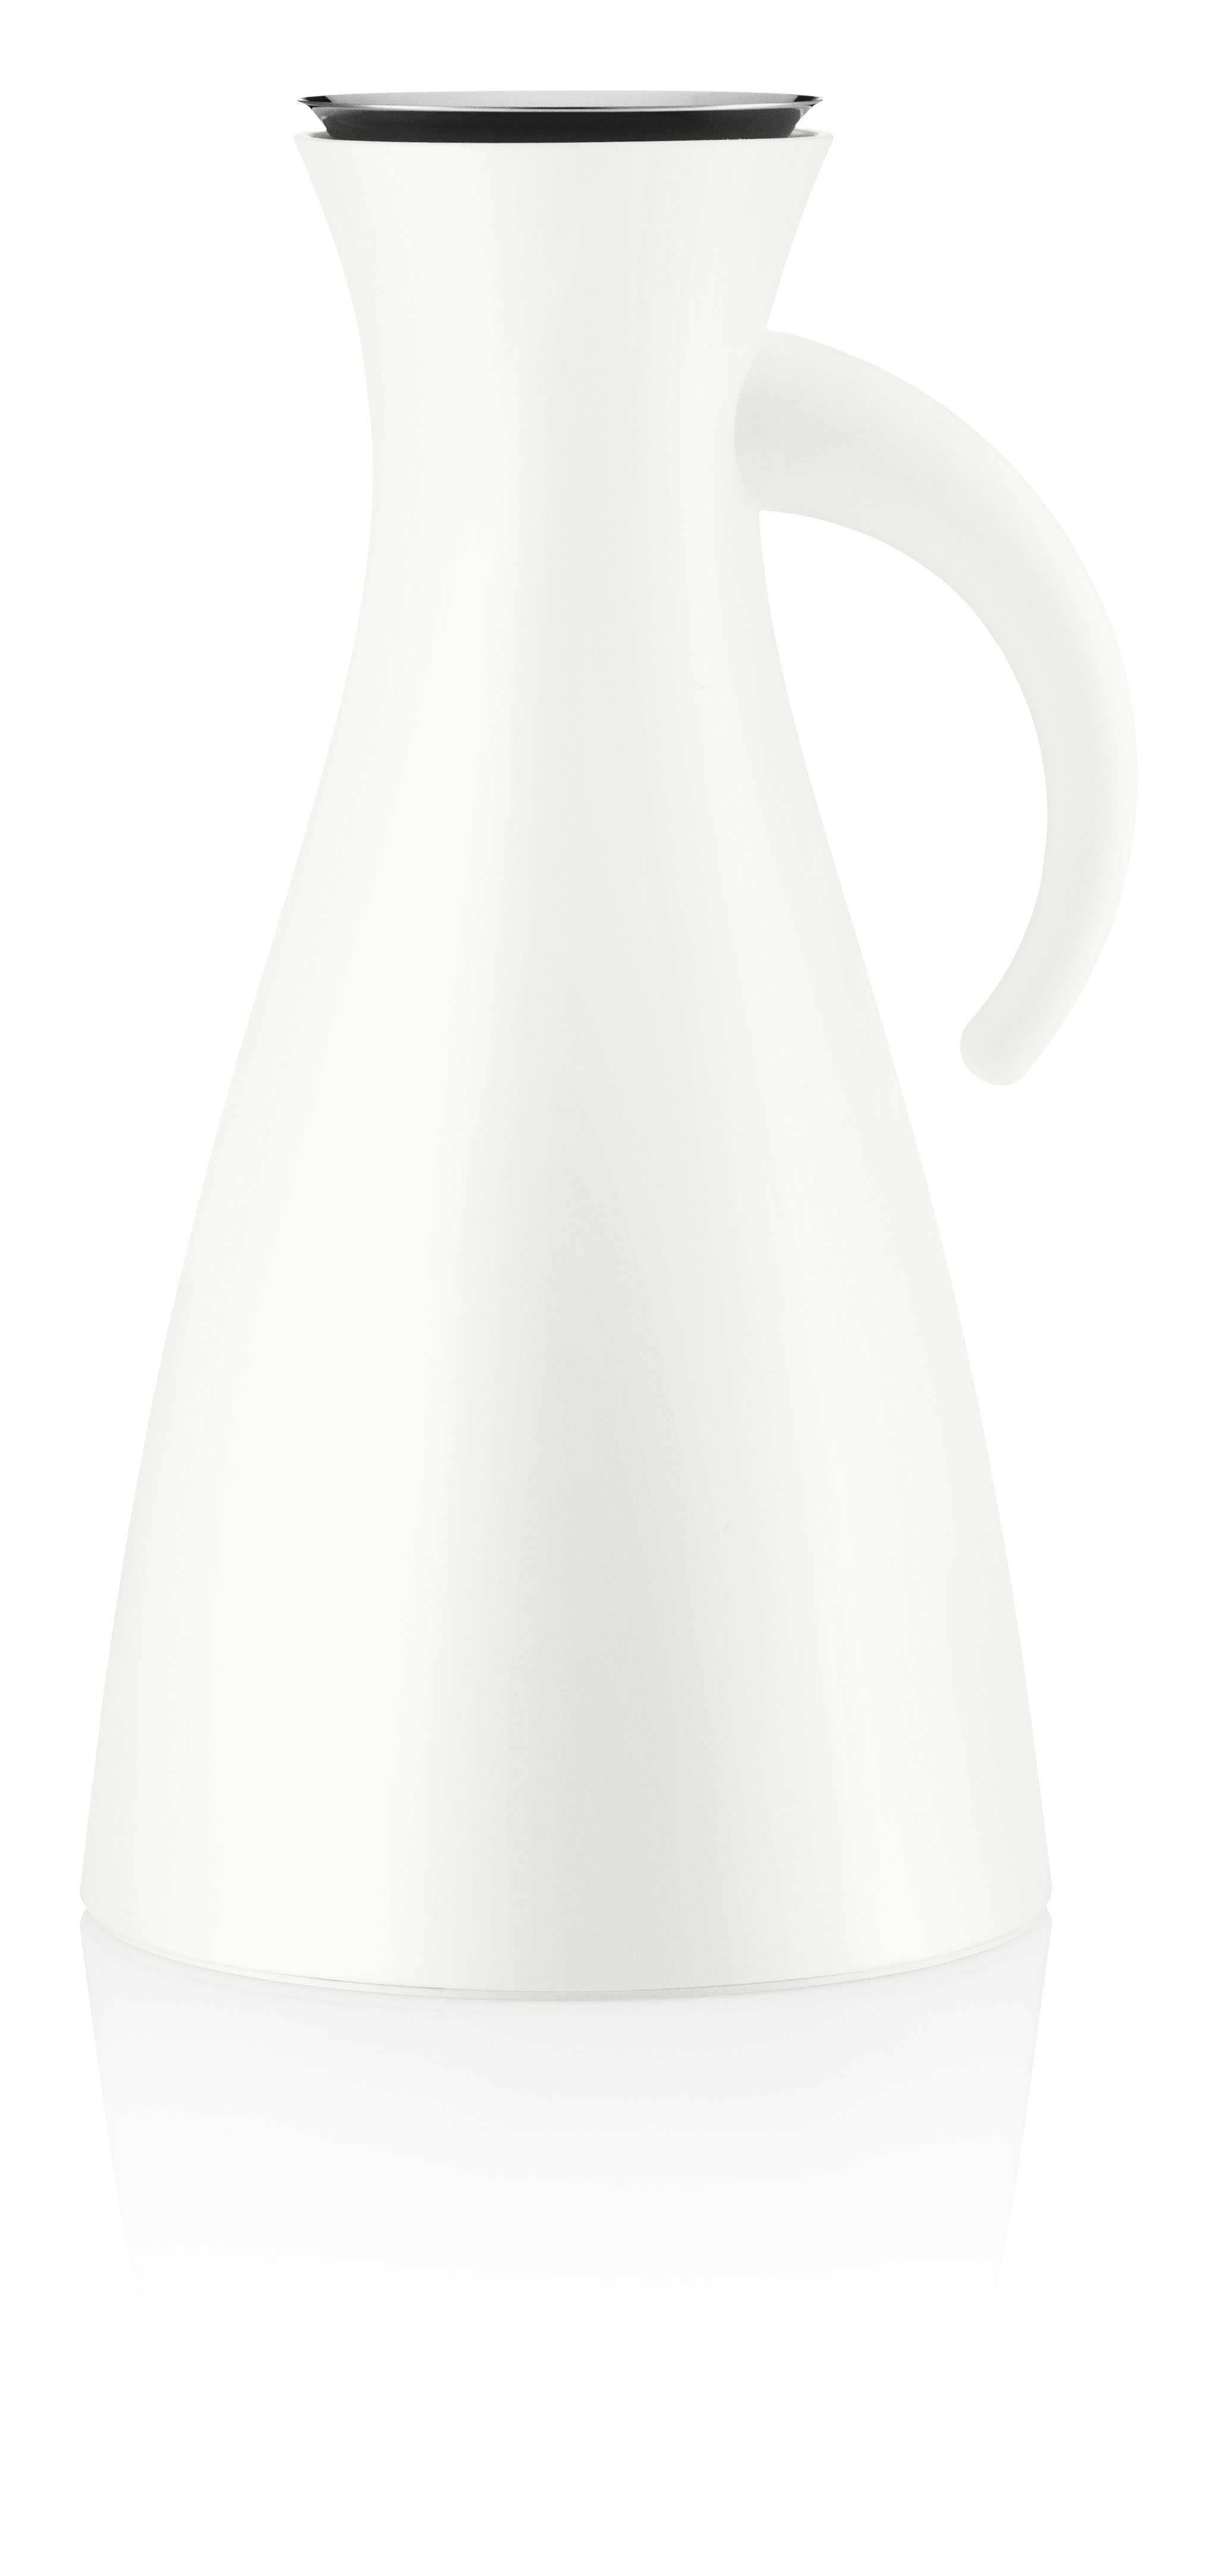 Eva Solo - Vacuum Jug - White (502911)